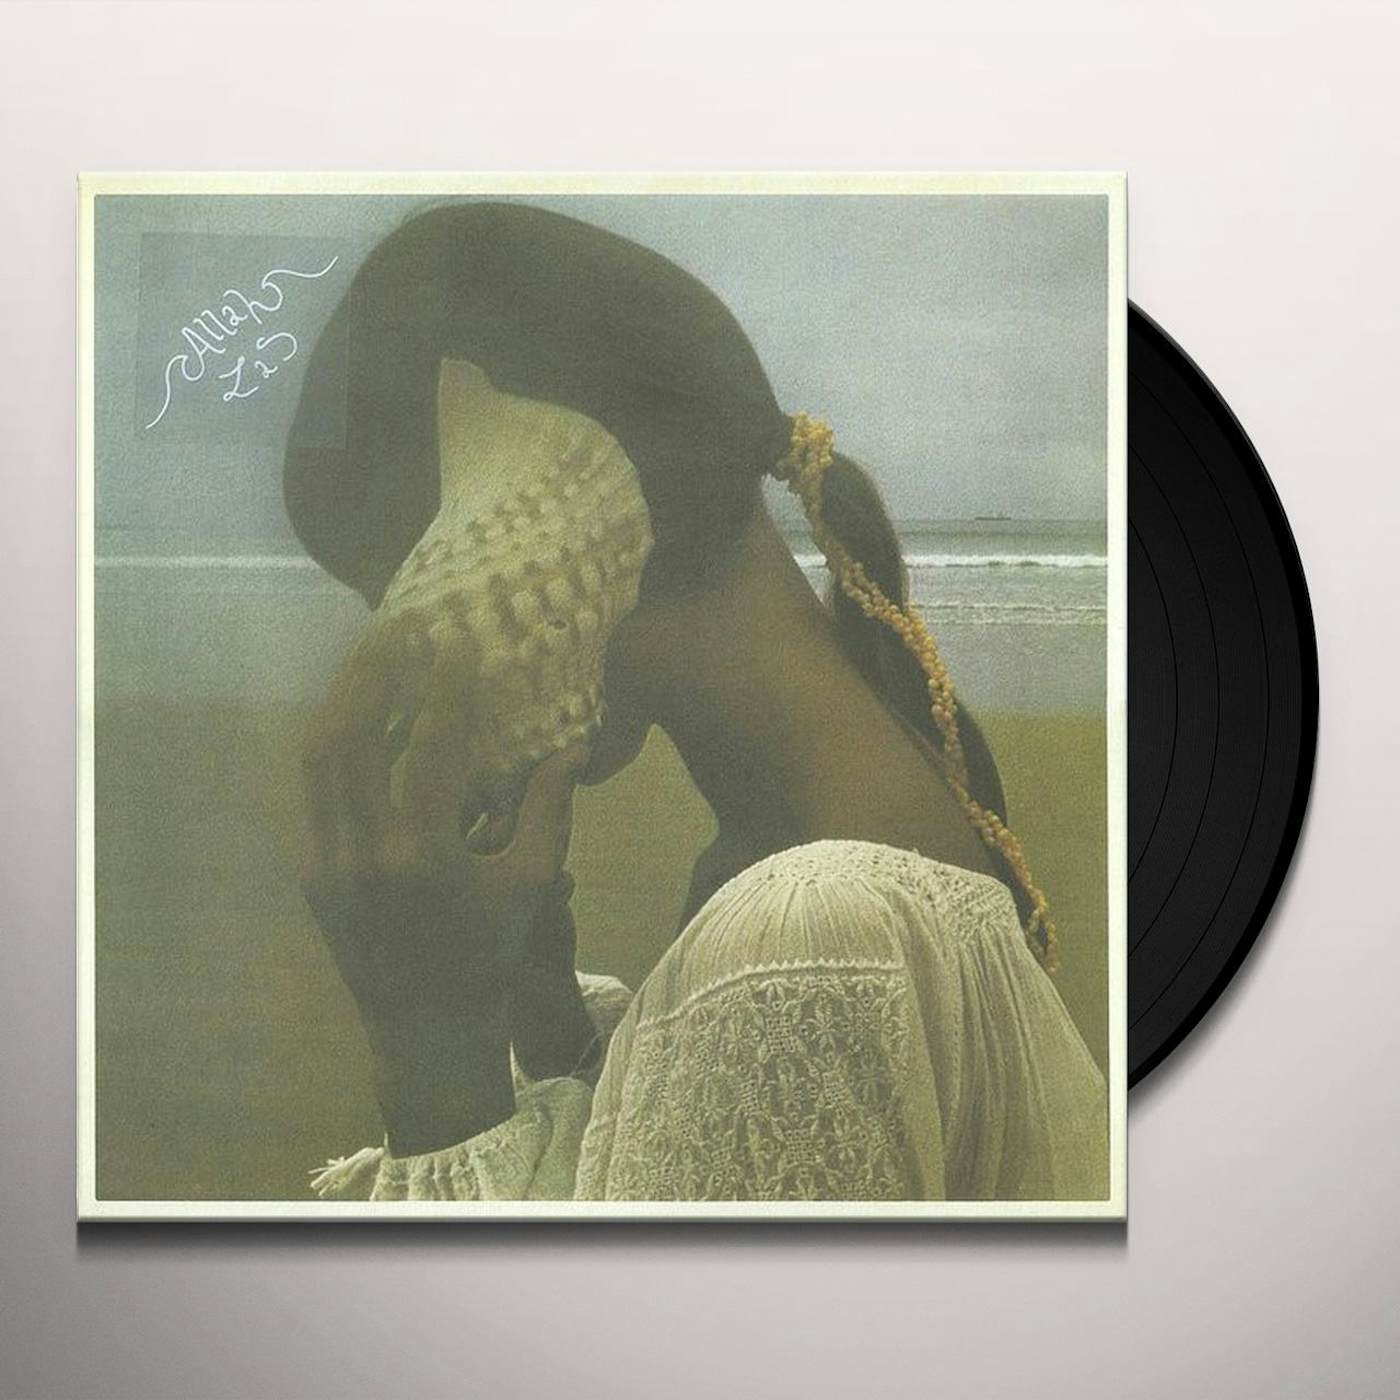 Allah-Las Vinyl Record